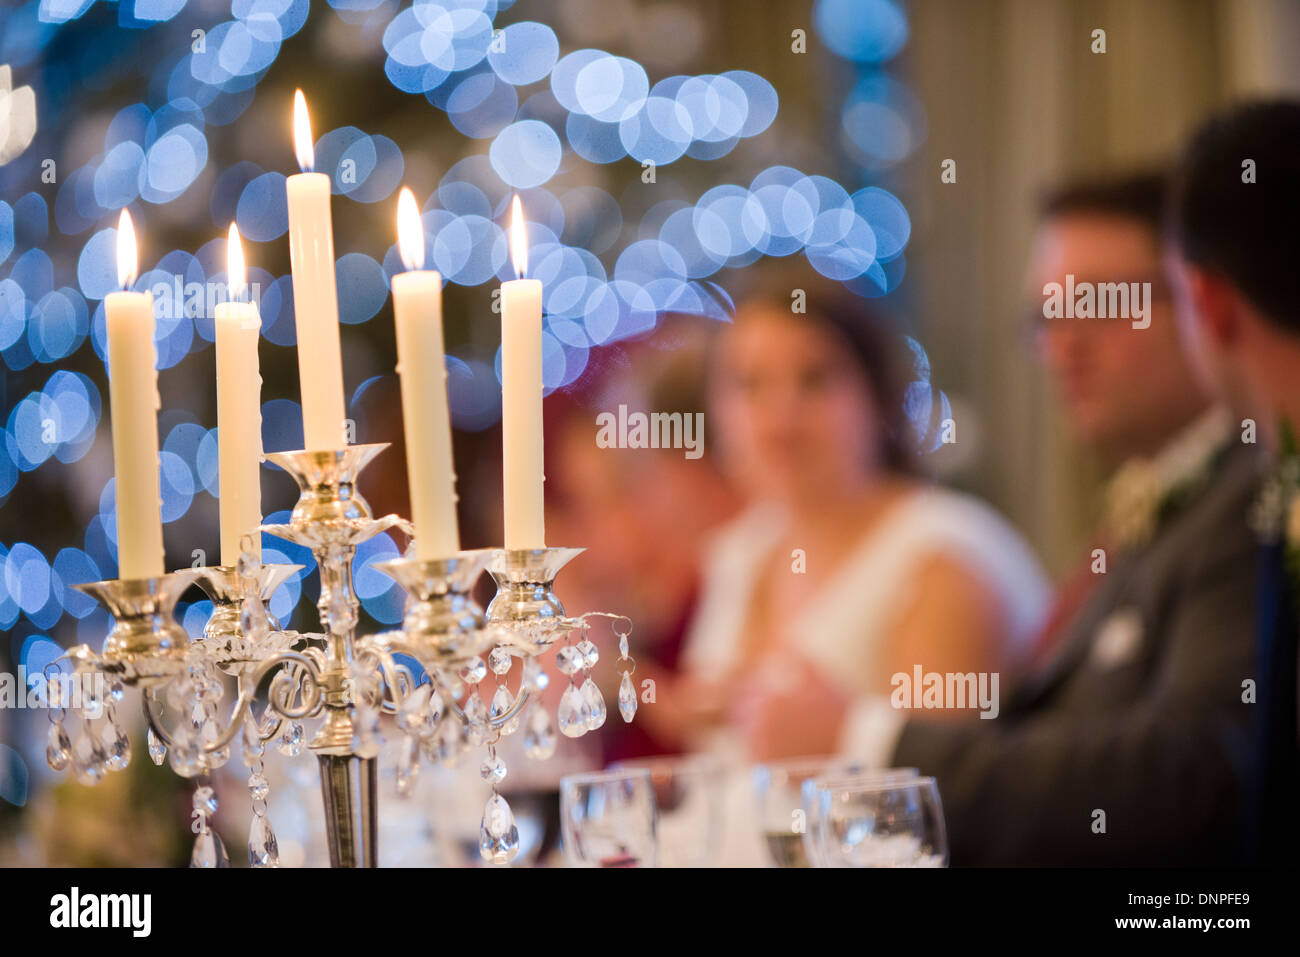 Leuchter bei einer Hochzeitsfeier, Funktion, Anlass, etwas zu tun, Menschen, glücklich, Feier, Hochzeit, Flamme, Gefahr, Gefahr Stockfoto